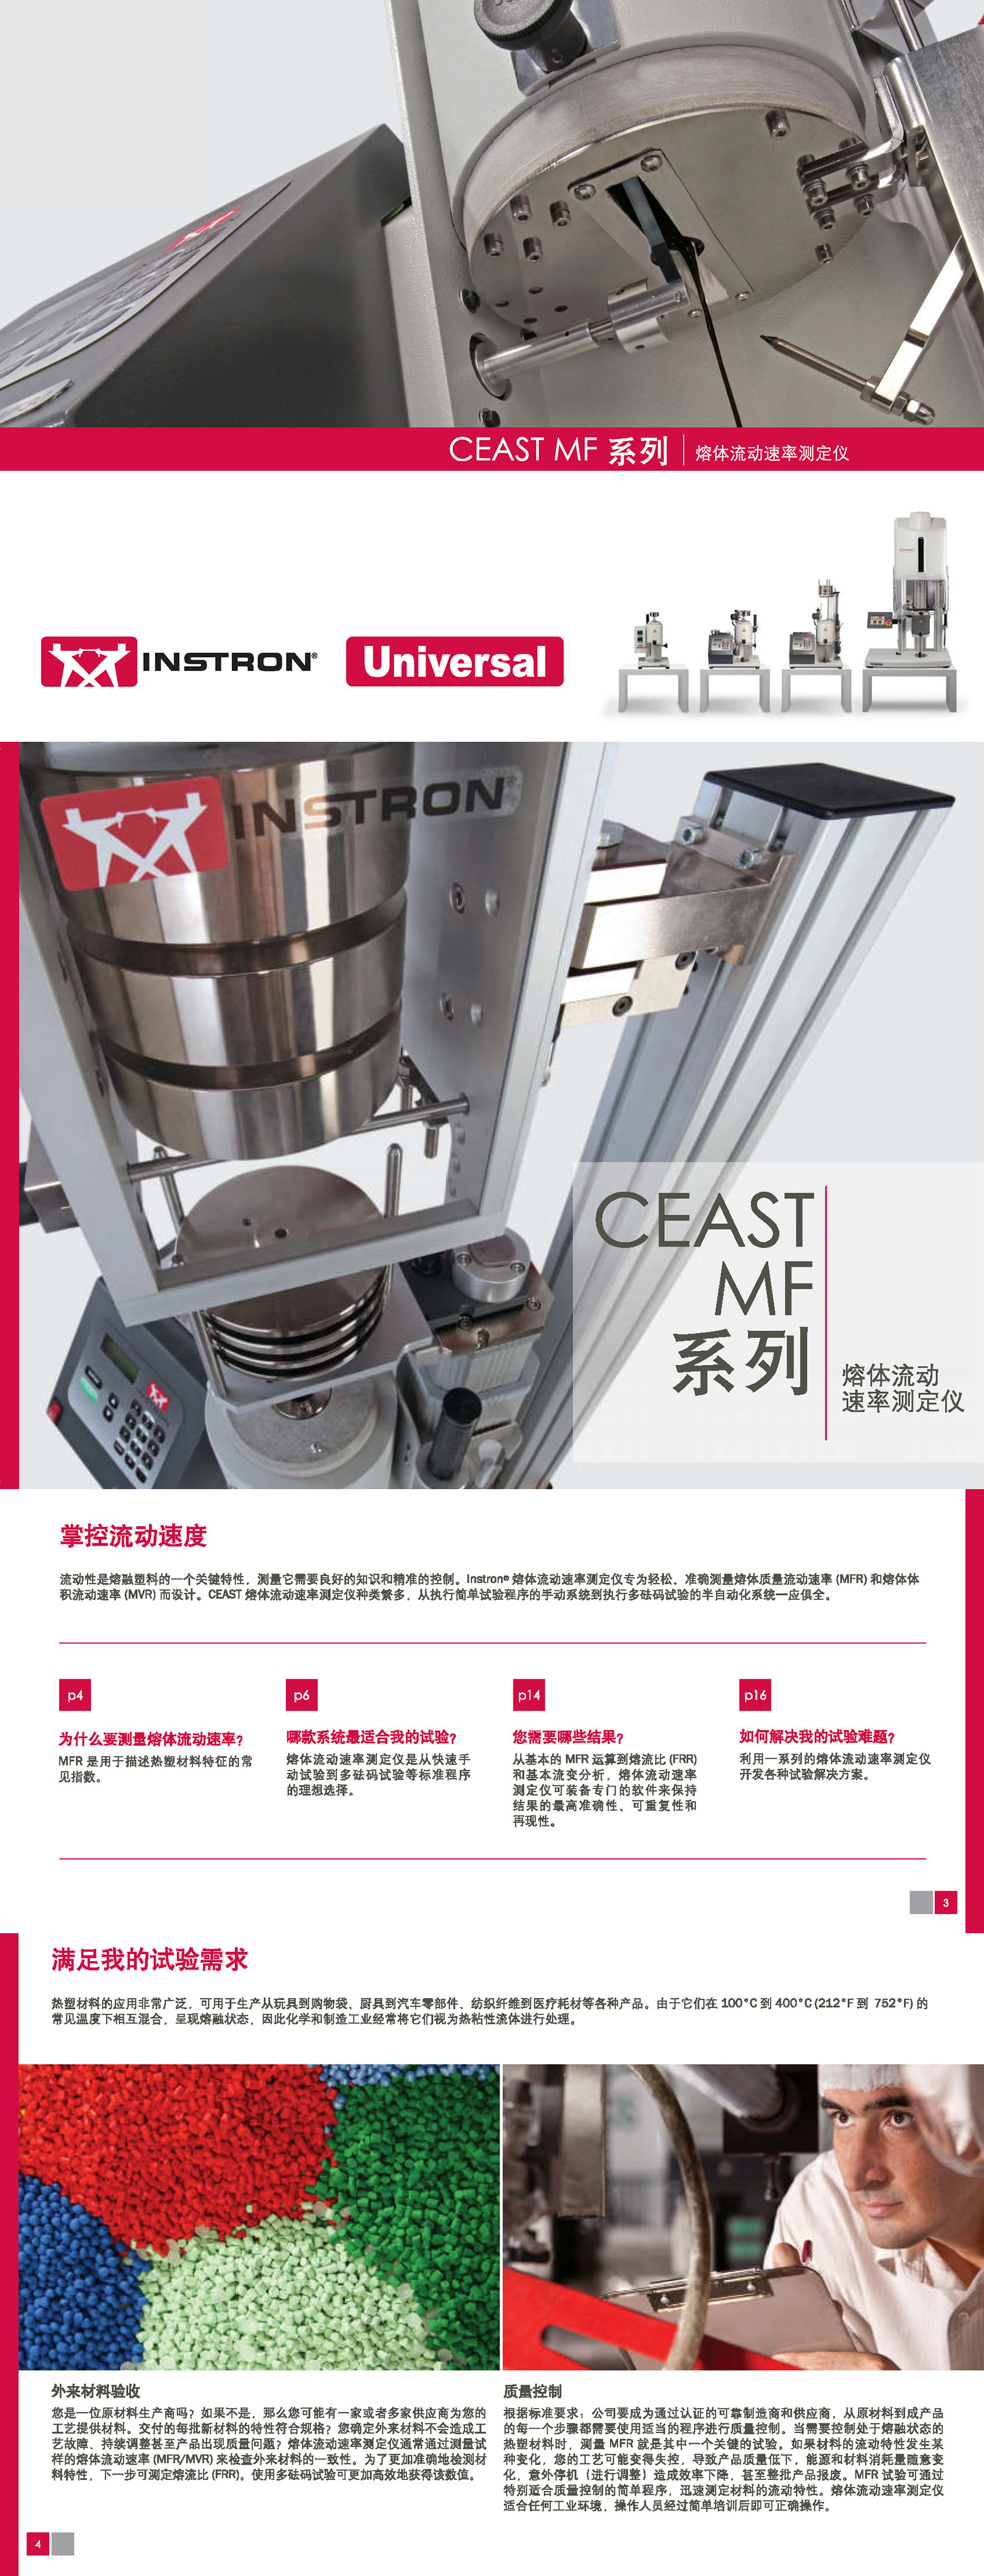 CEAST MF系列熔融指数仪